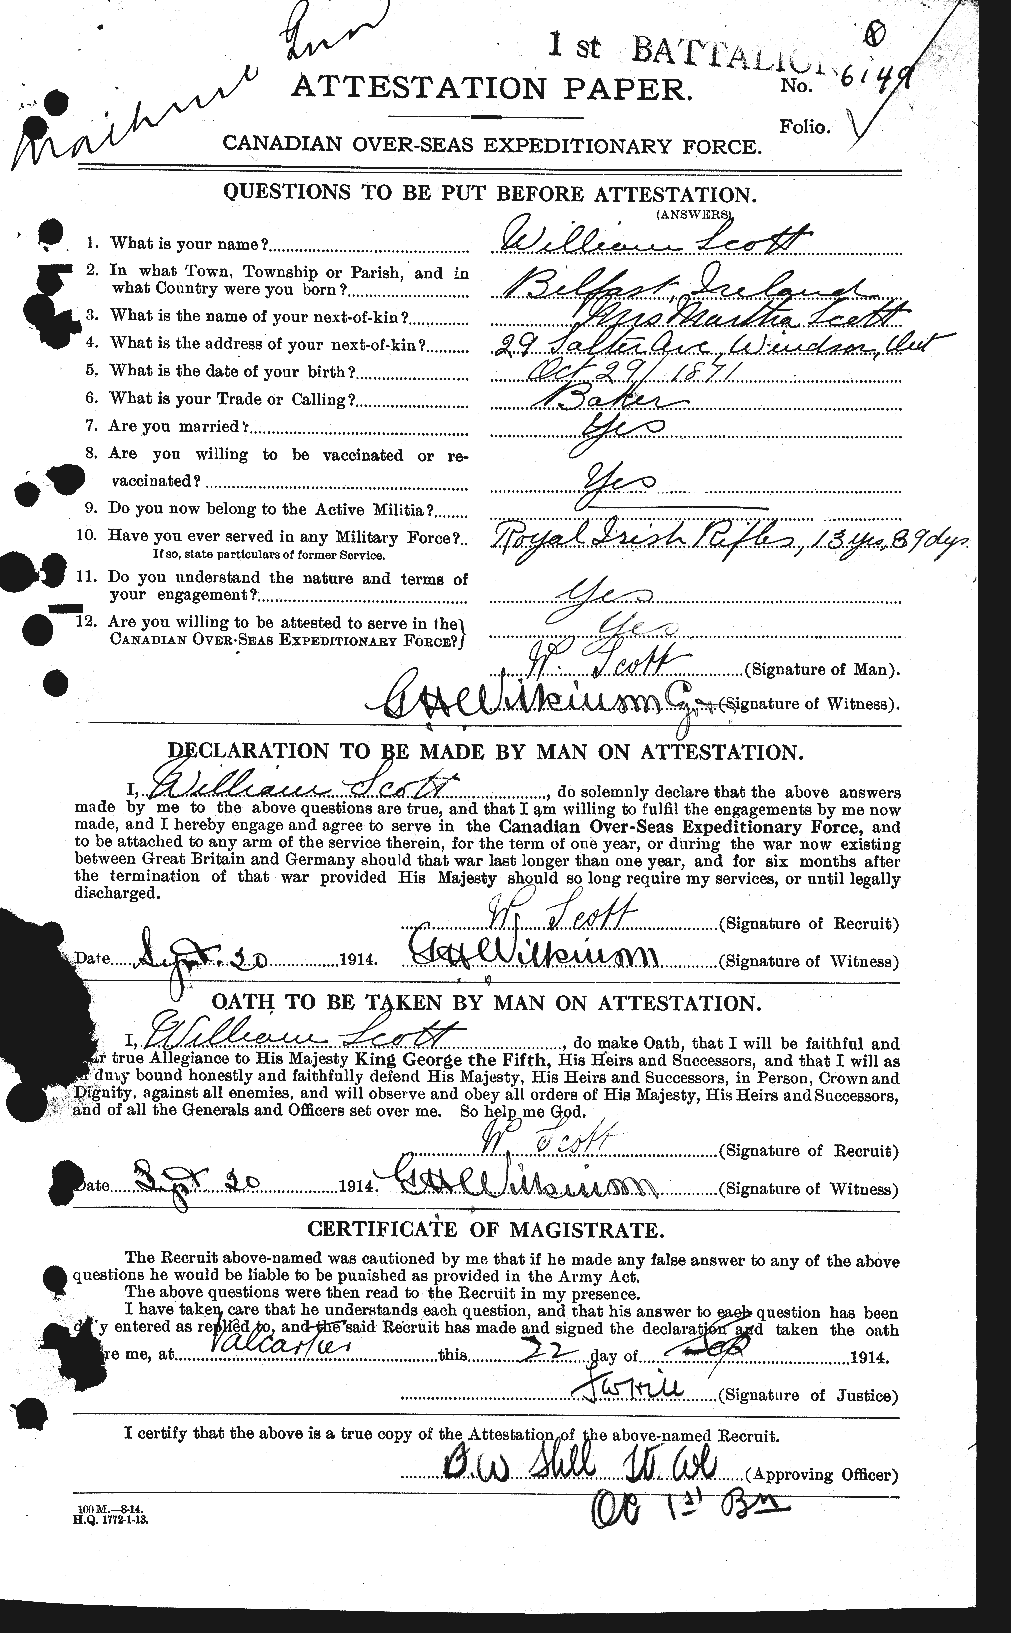 Dossiers du Personnel de la Première Guerre mondiale - CEC 087355a